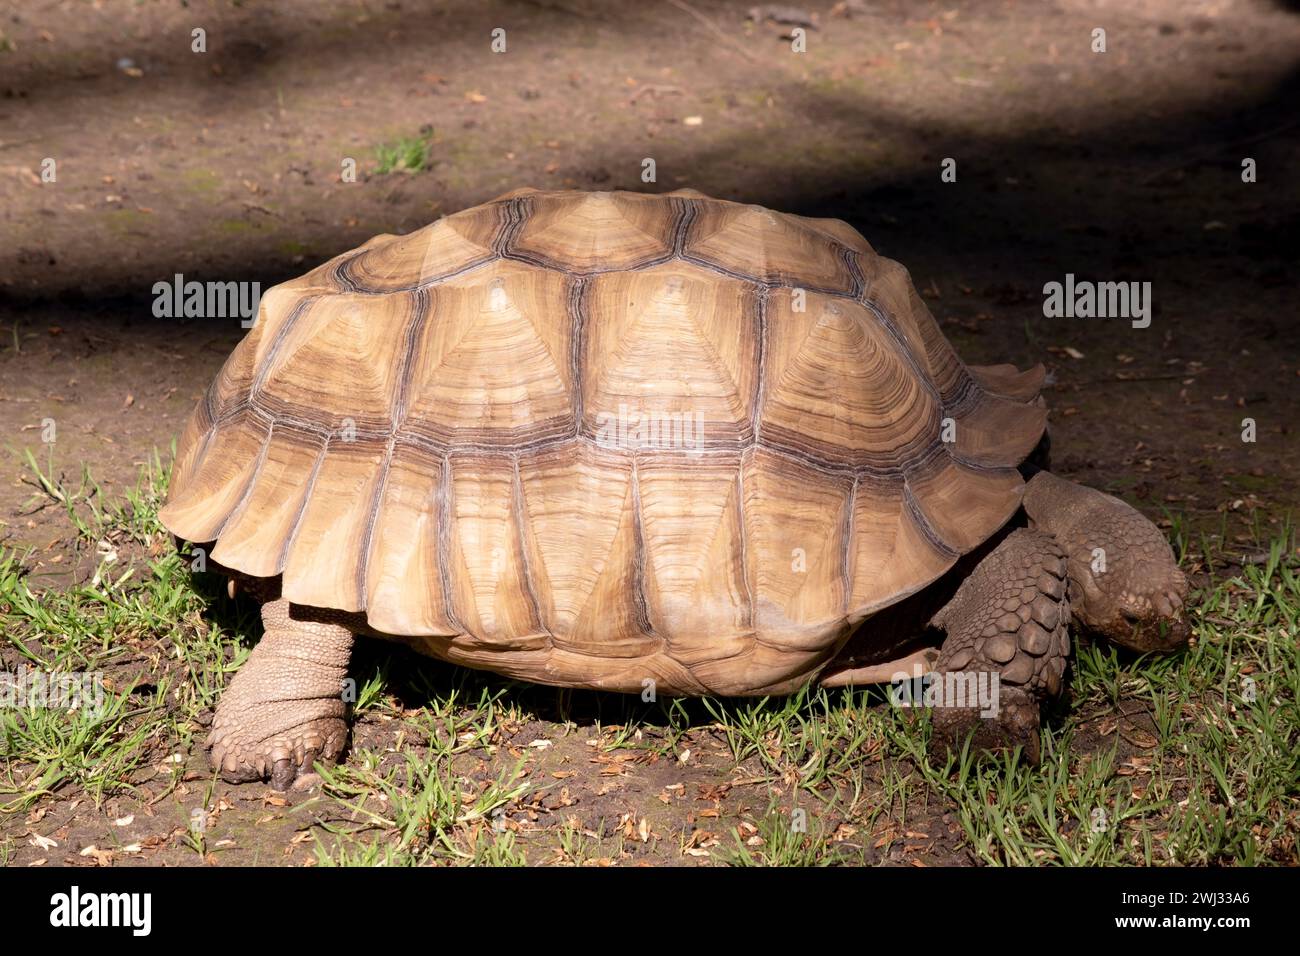 Les tortues Aldabras sont l'une des plus grandes tortues terrestres du monde Banque D'Images